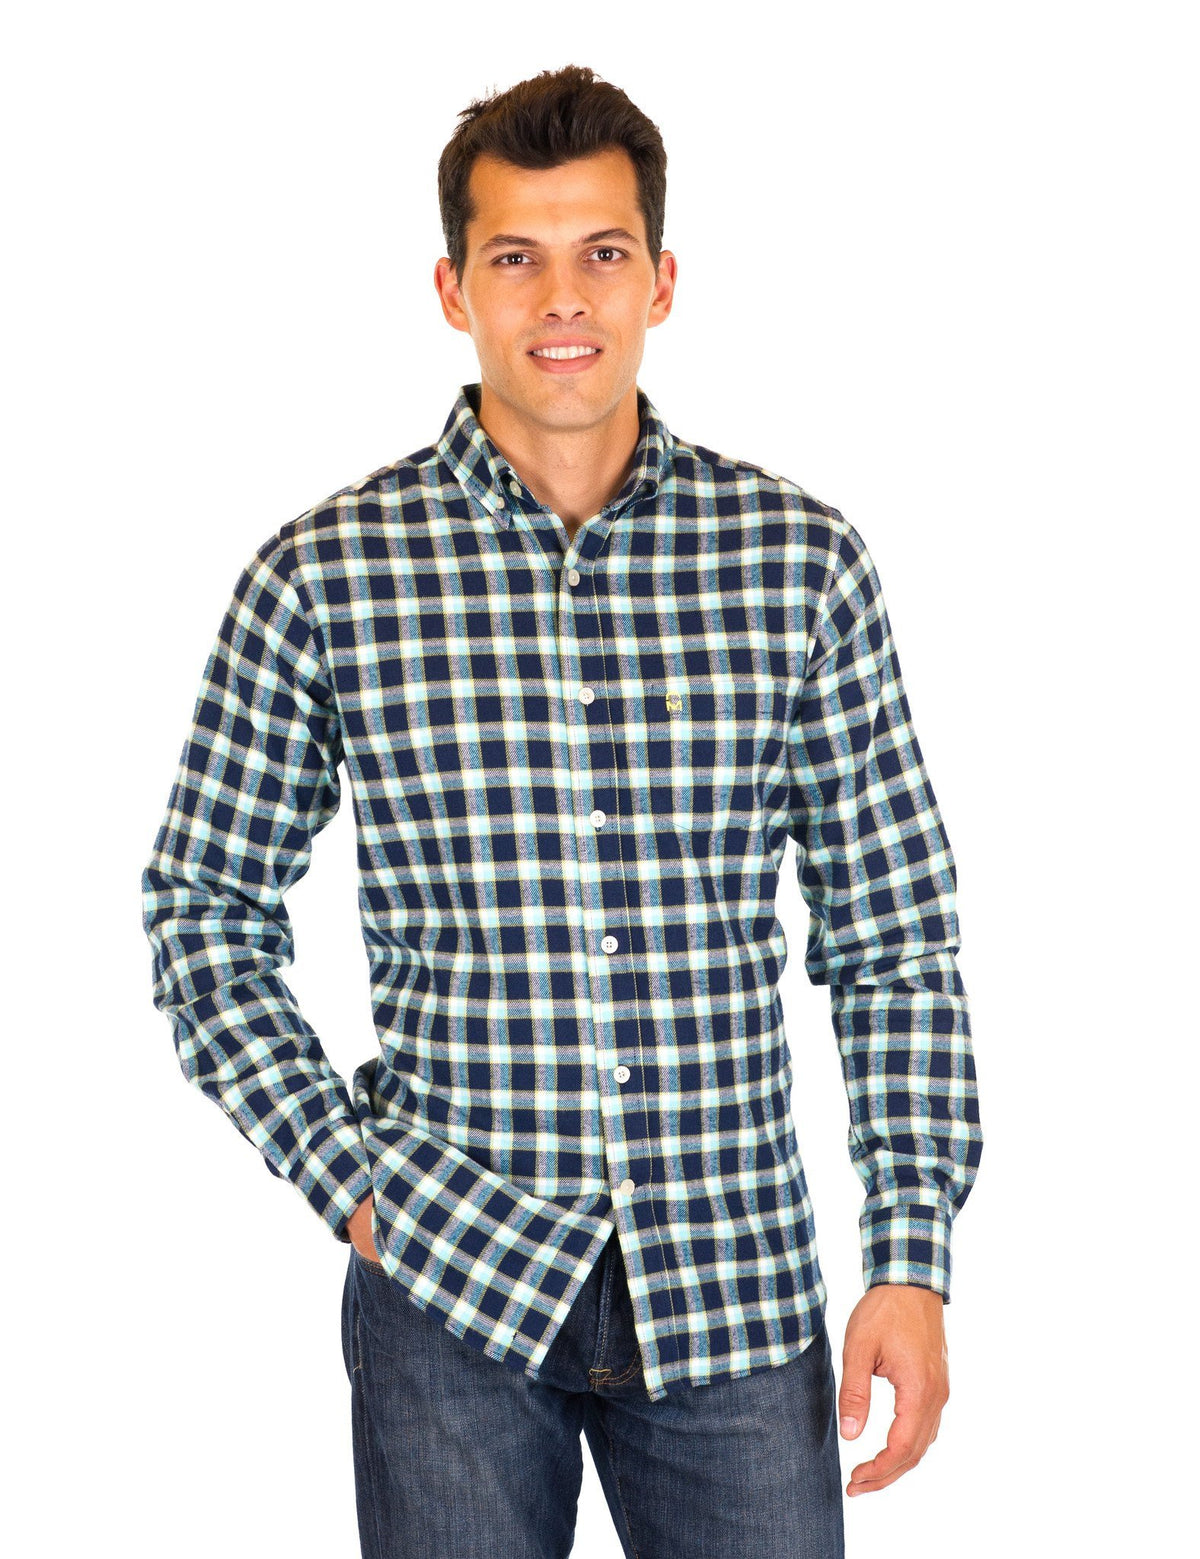 Mens 100% Cotton Flannel Shirt - Regular Fit - Black/Blue Plaid